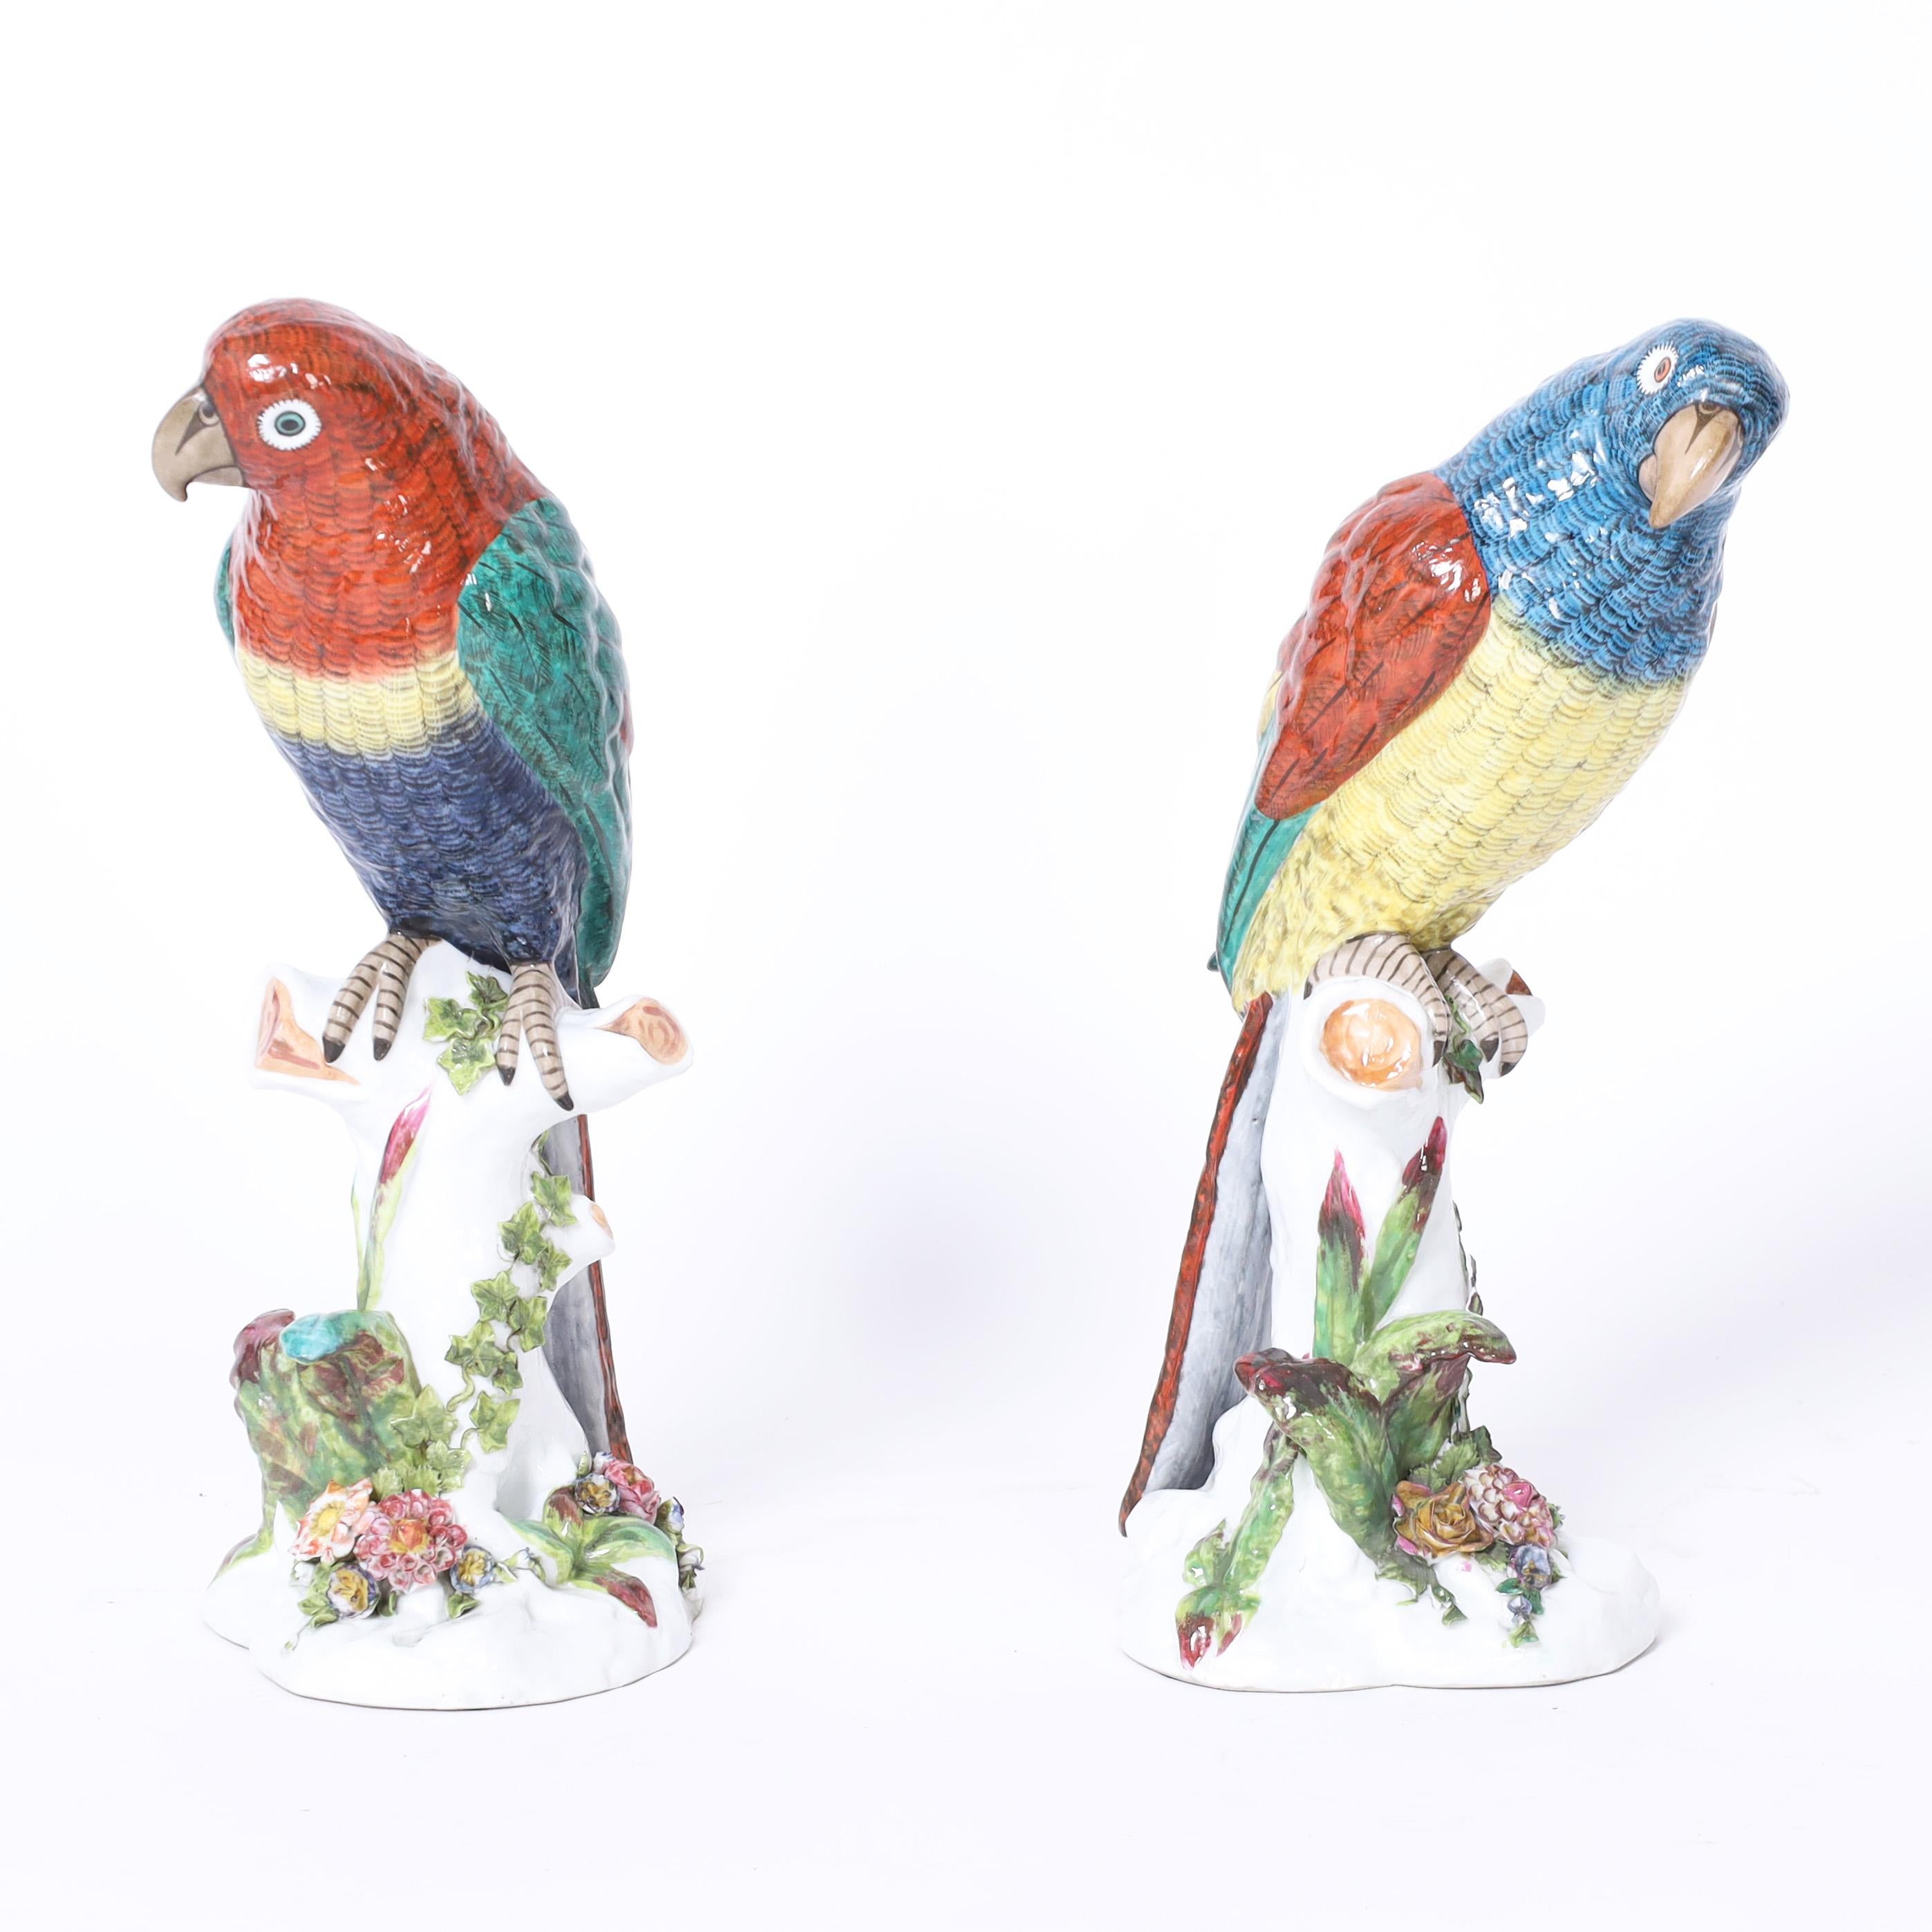 Paire de perroquets en porcelaine française grandeur nature perchés sur des troncs d'arbre, décorés à la main dans des couleurs tropicales saisissantes. Signé par le fabricant sur les fonds.